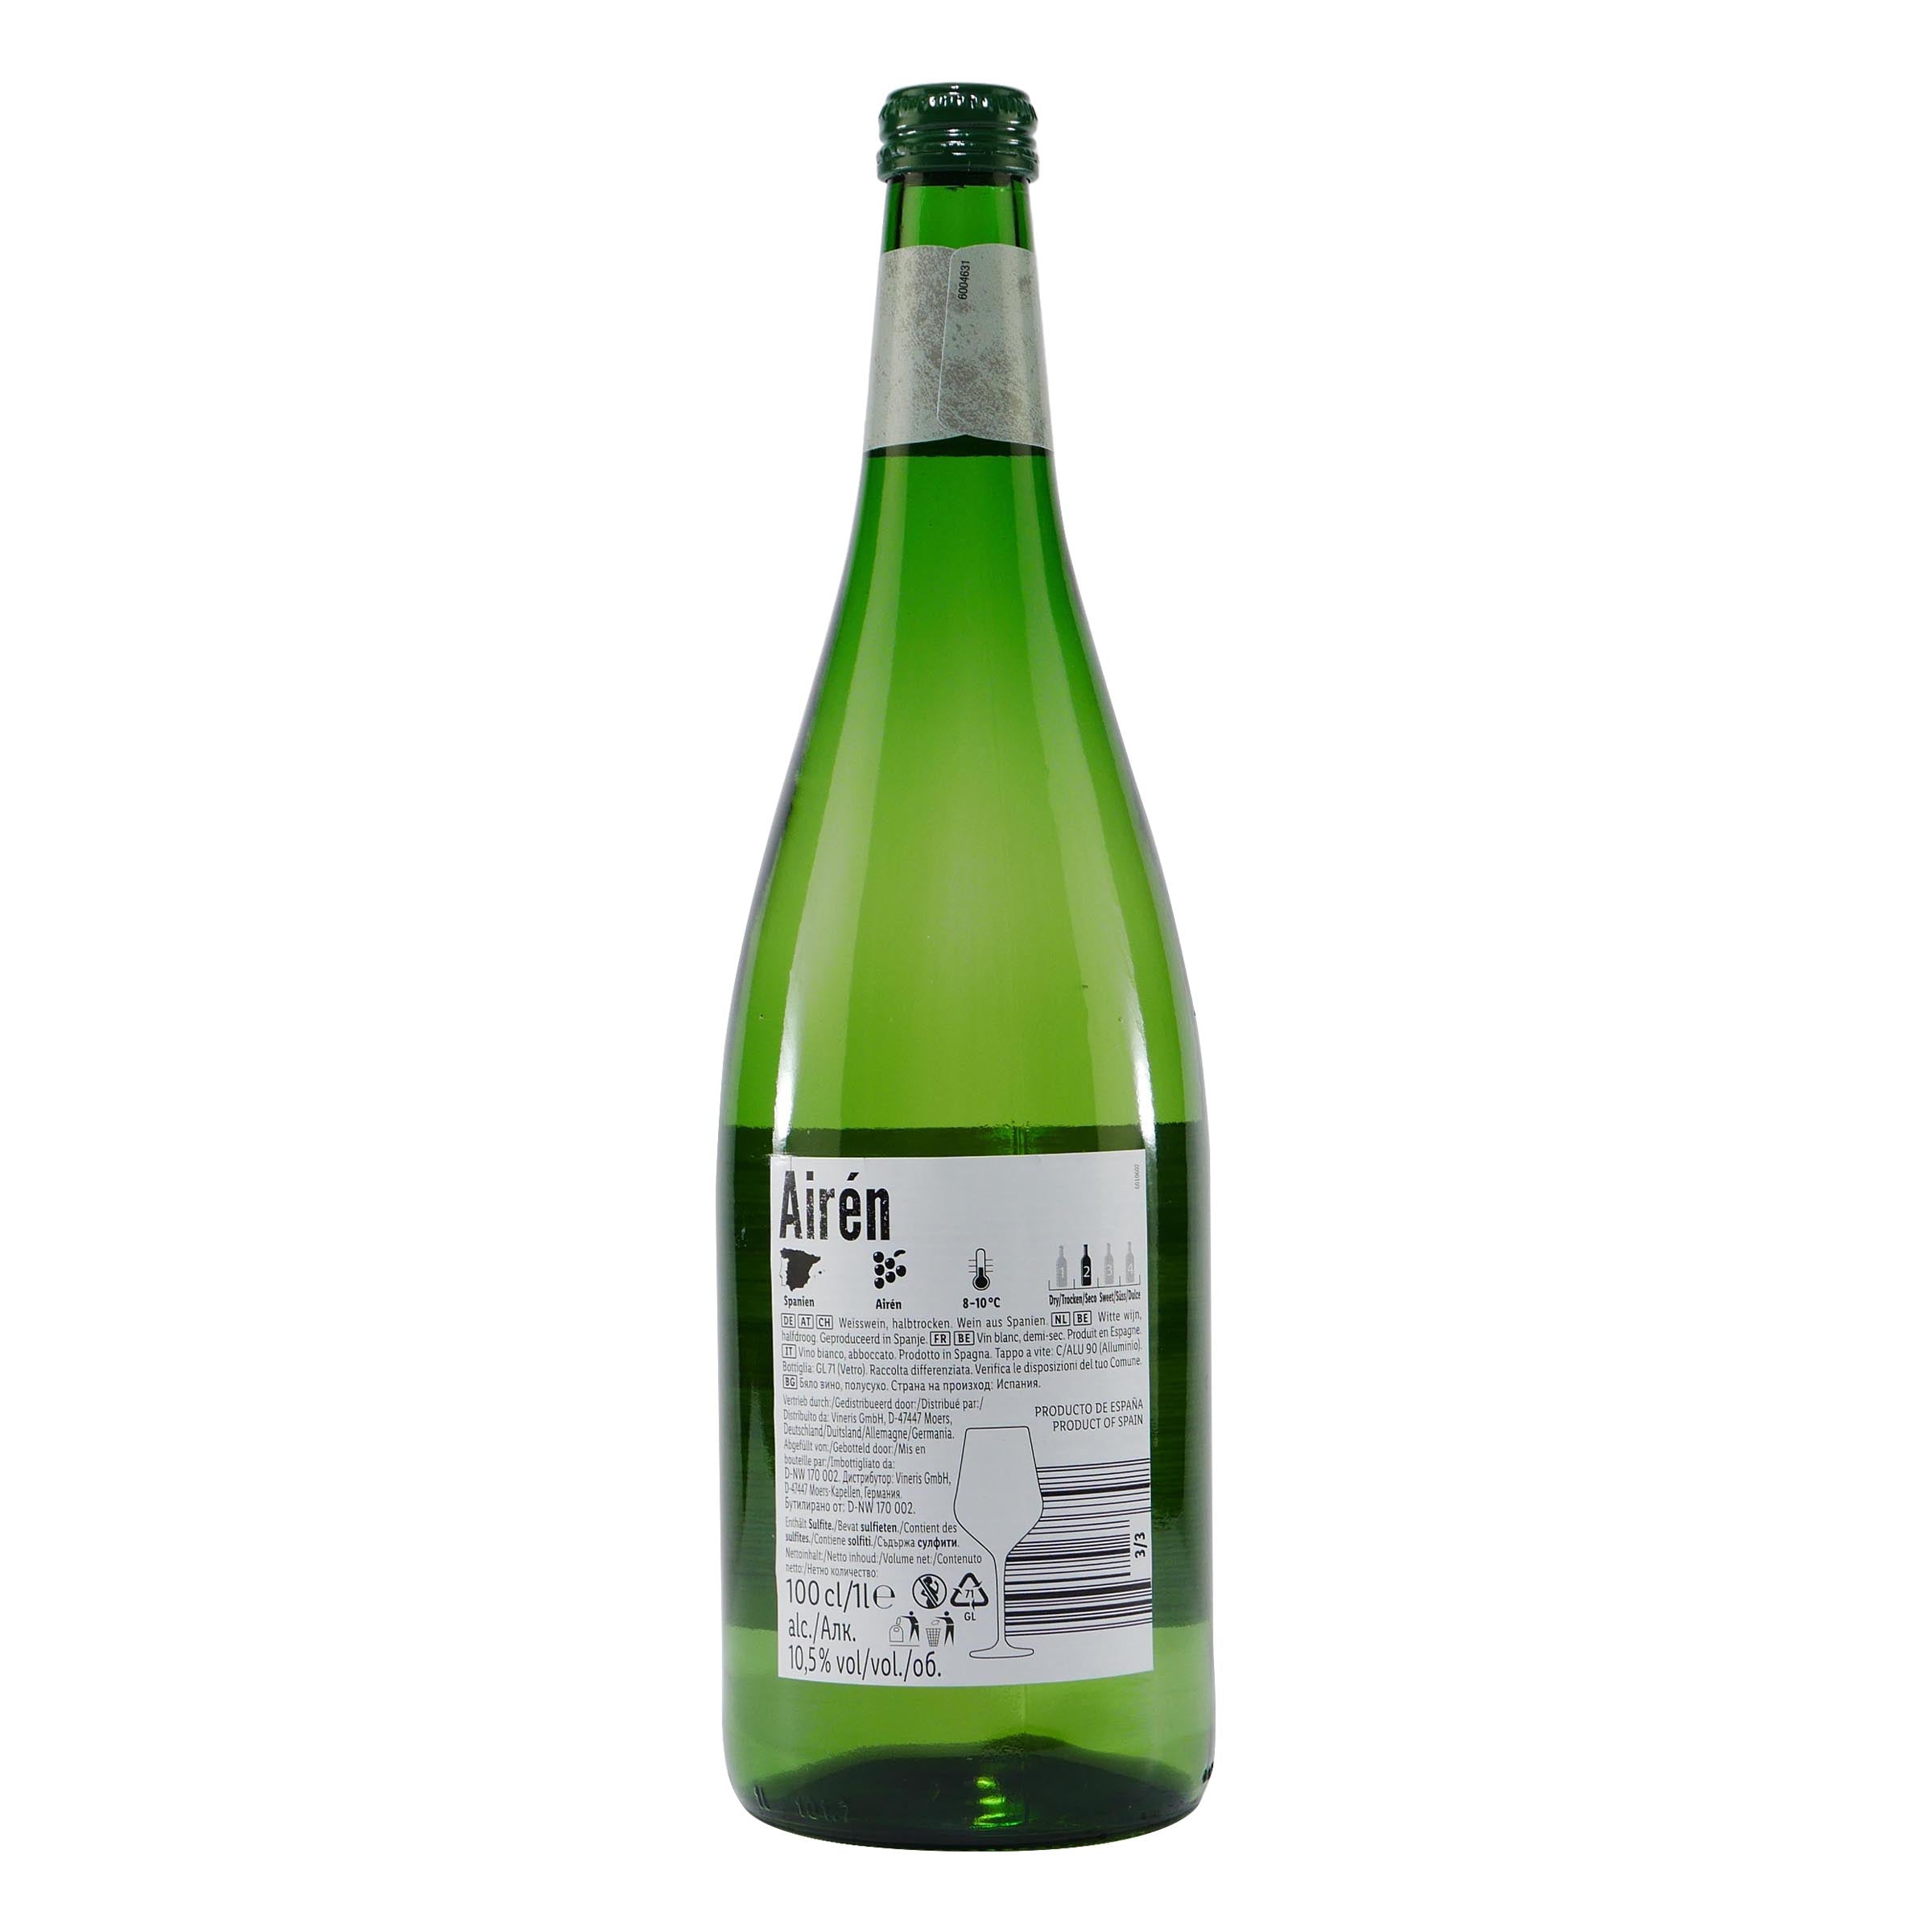 Airén Weißwein -halbtrocken- (6 x 1,0L)